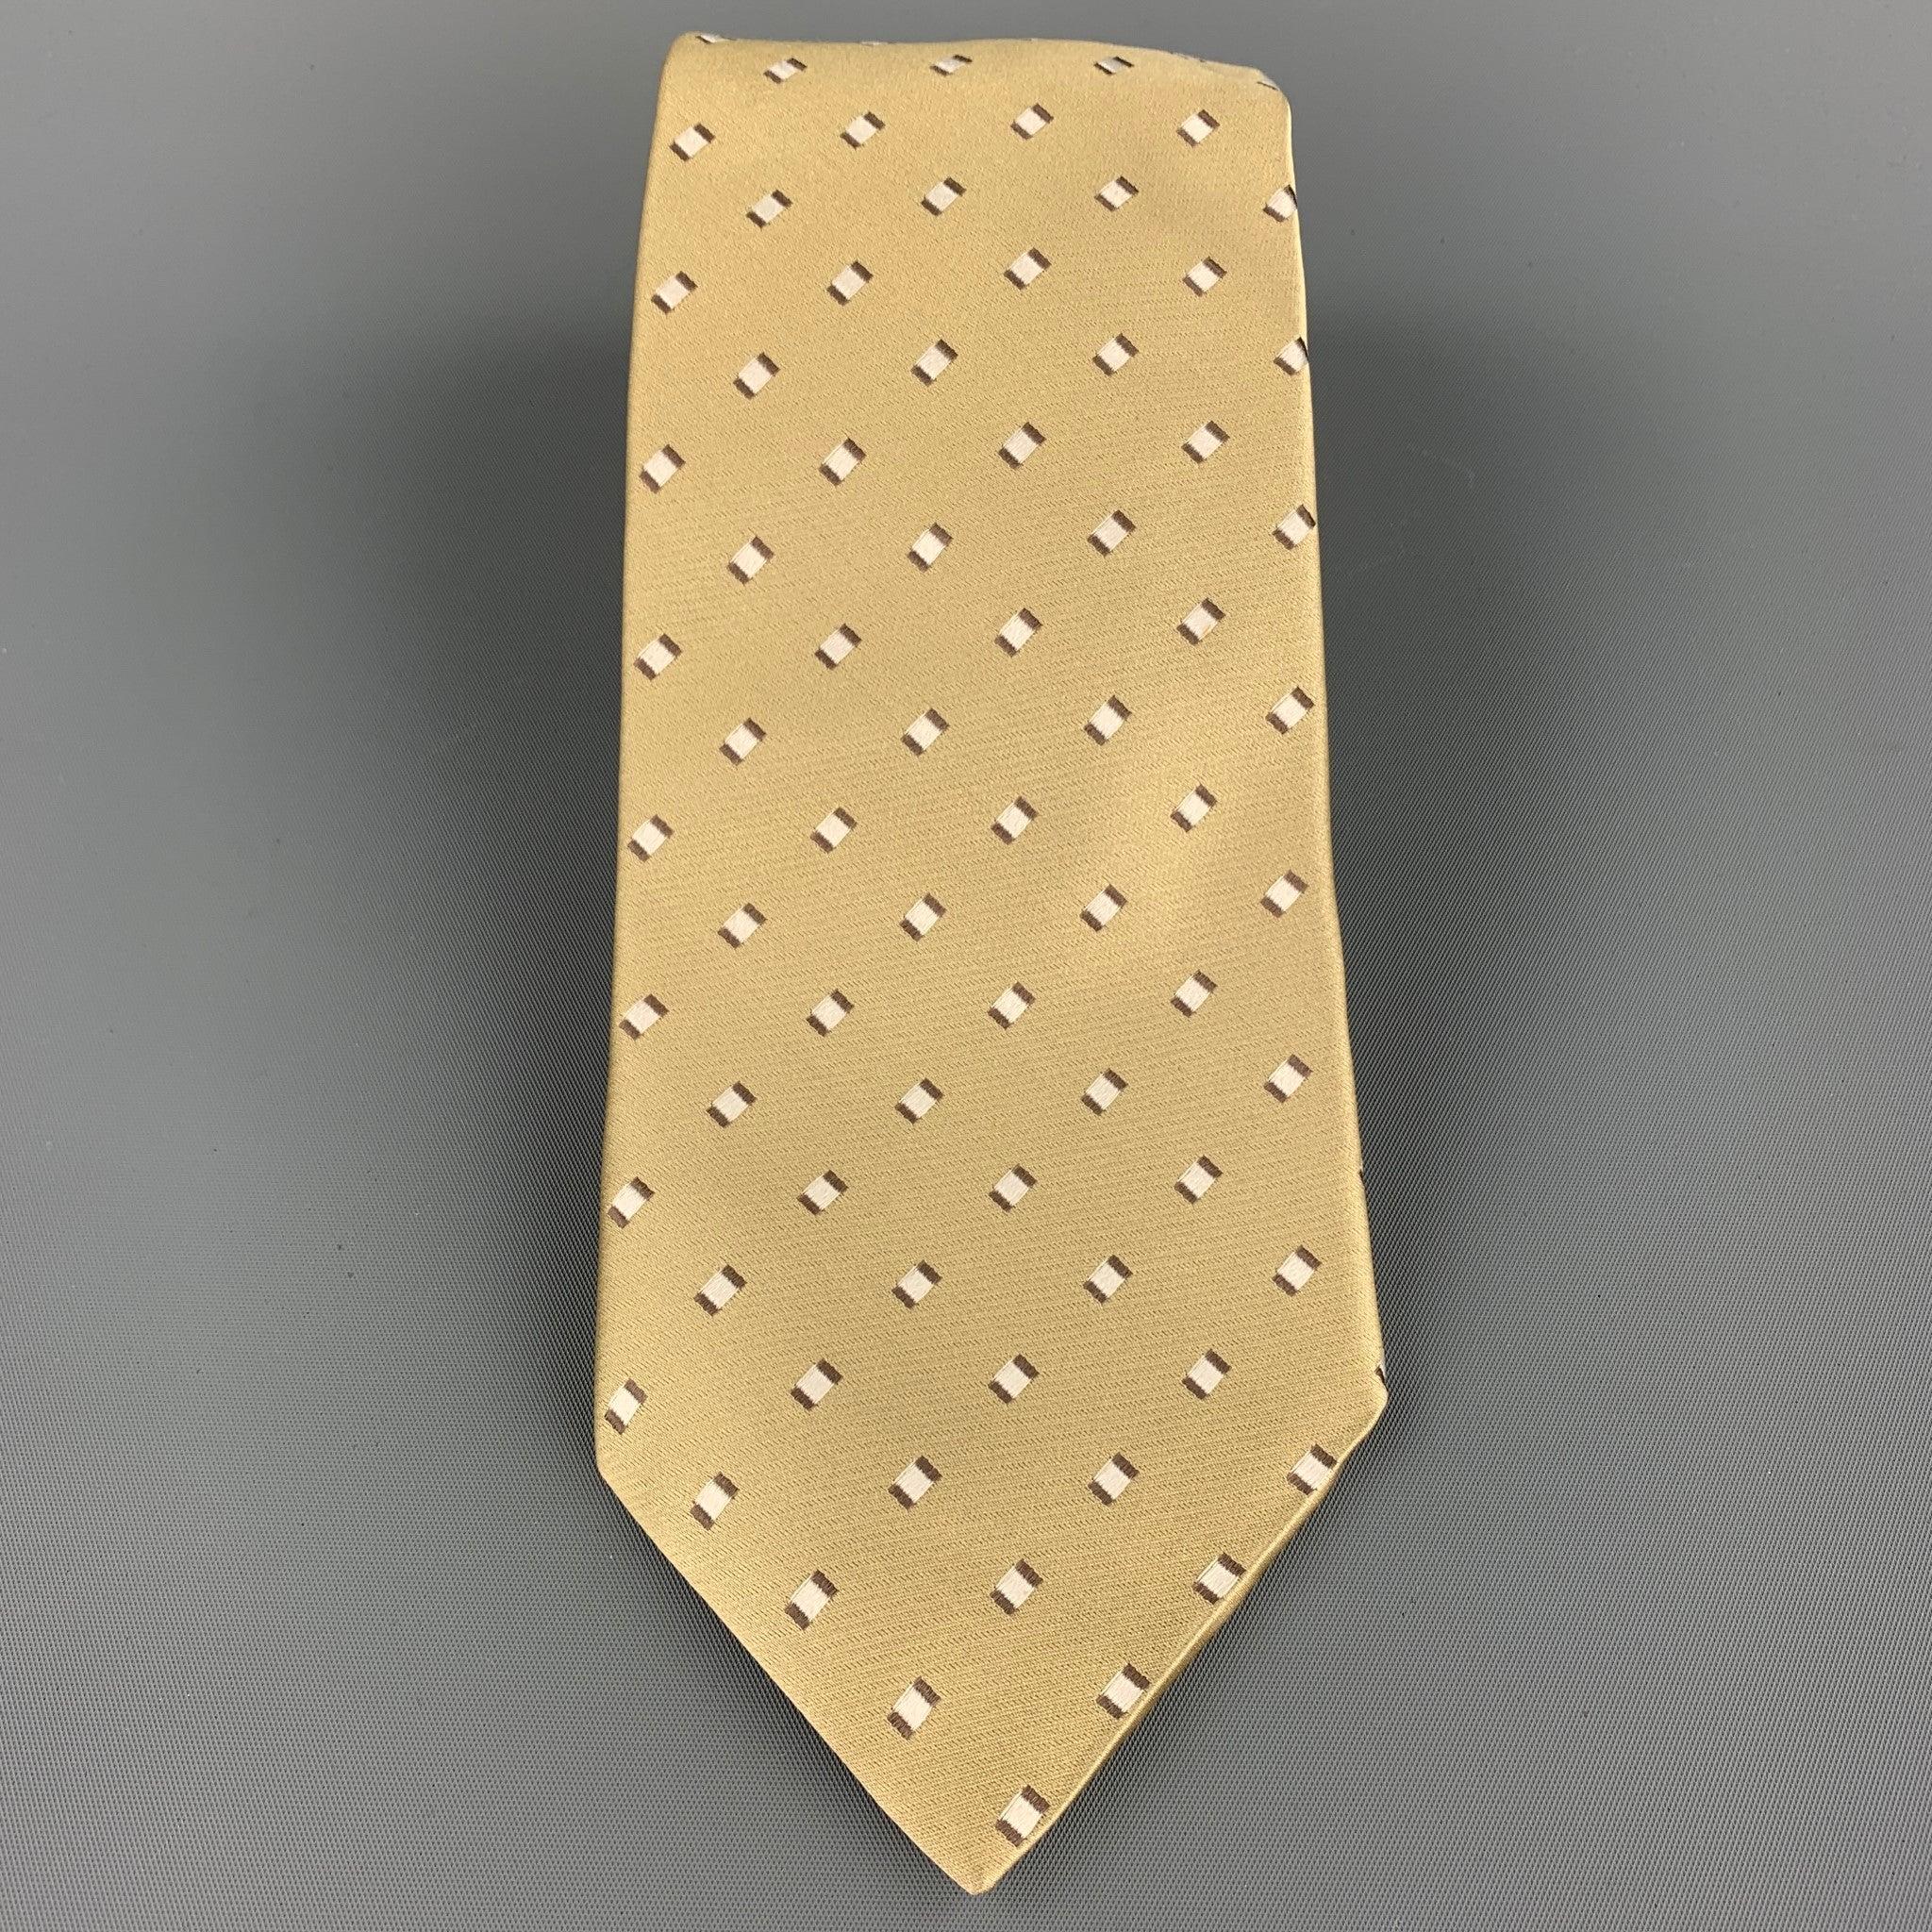 ERMENEGILDO ZEGNA Krawatte aus goldfarbener Seide mit Karodruck. Made in Italy.sehr guter gebrauchter Zustand.Breite: 4 Zoll  
  
  
 
Sui Generis-Referenz: 107883
Kategorie: Krawatte
Mehr Details
    
Marke:  ERMENEGILDO ZEGNA
Farbe:  Gold
Muster: 